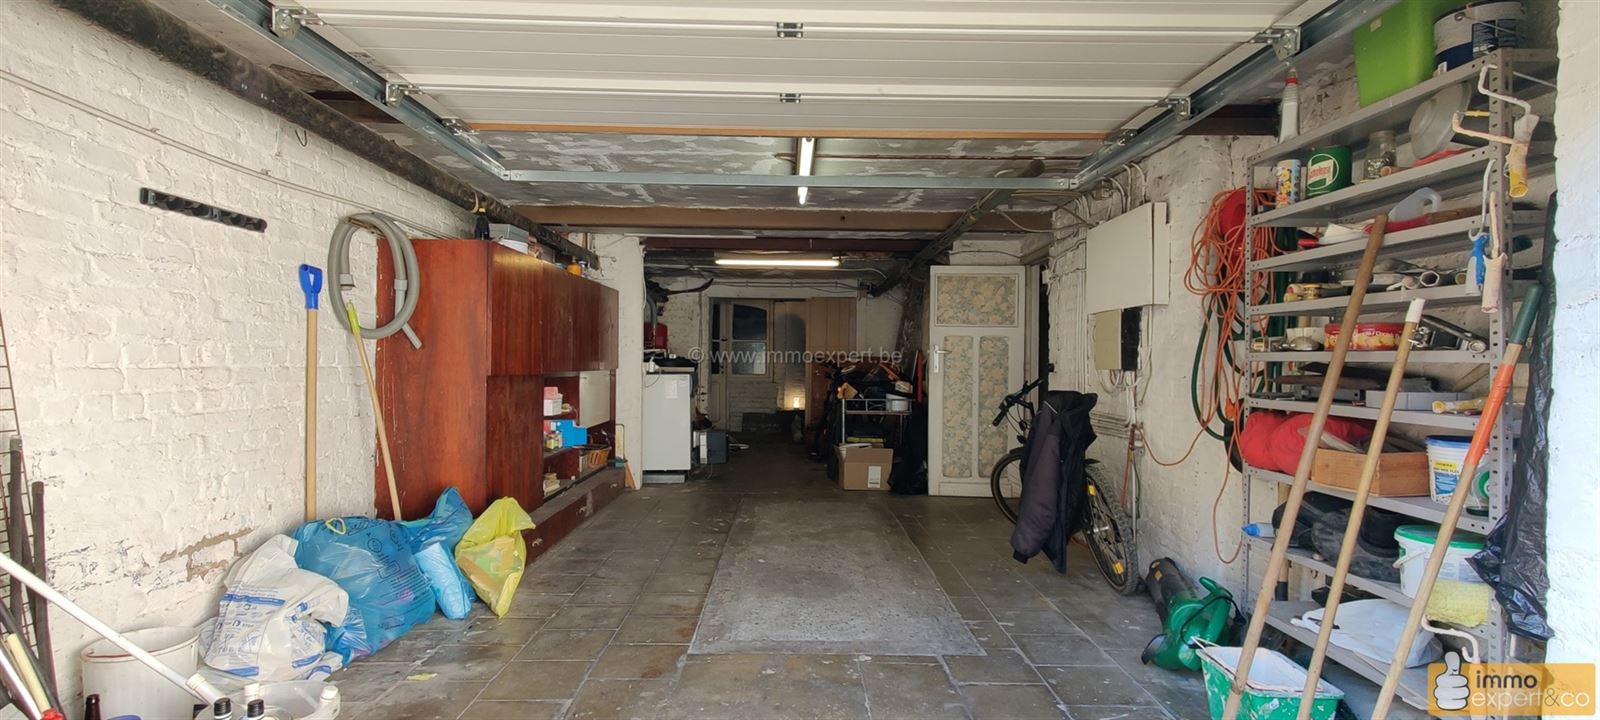 ANDERLECHT: Appartementsgebouw met topligging foto 33